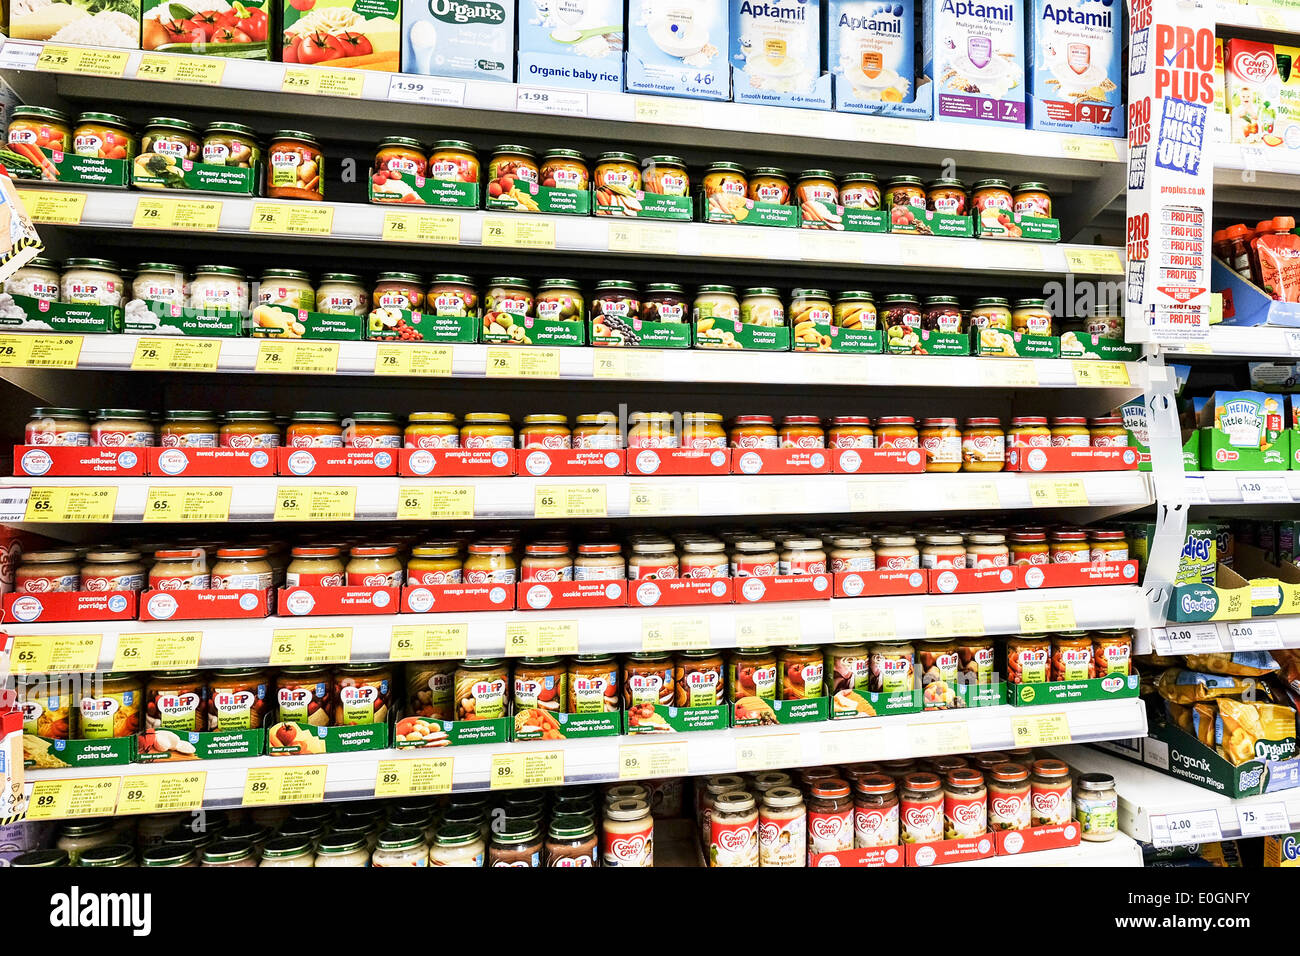 Un affichage d'aliments pour bébés dans un supermarché Tesco. Banque D'Images